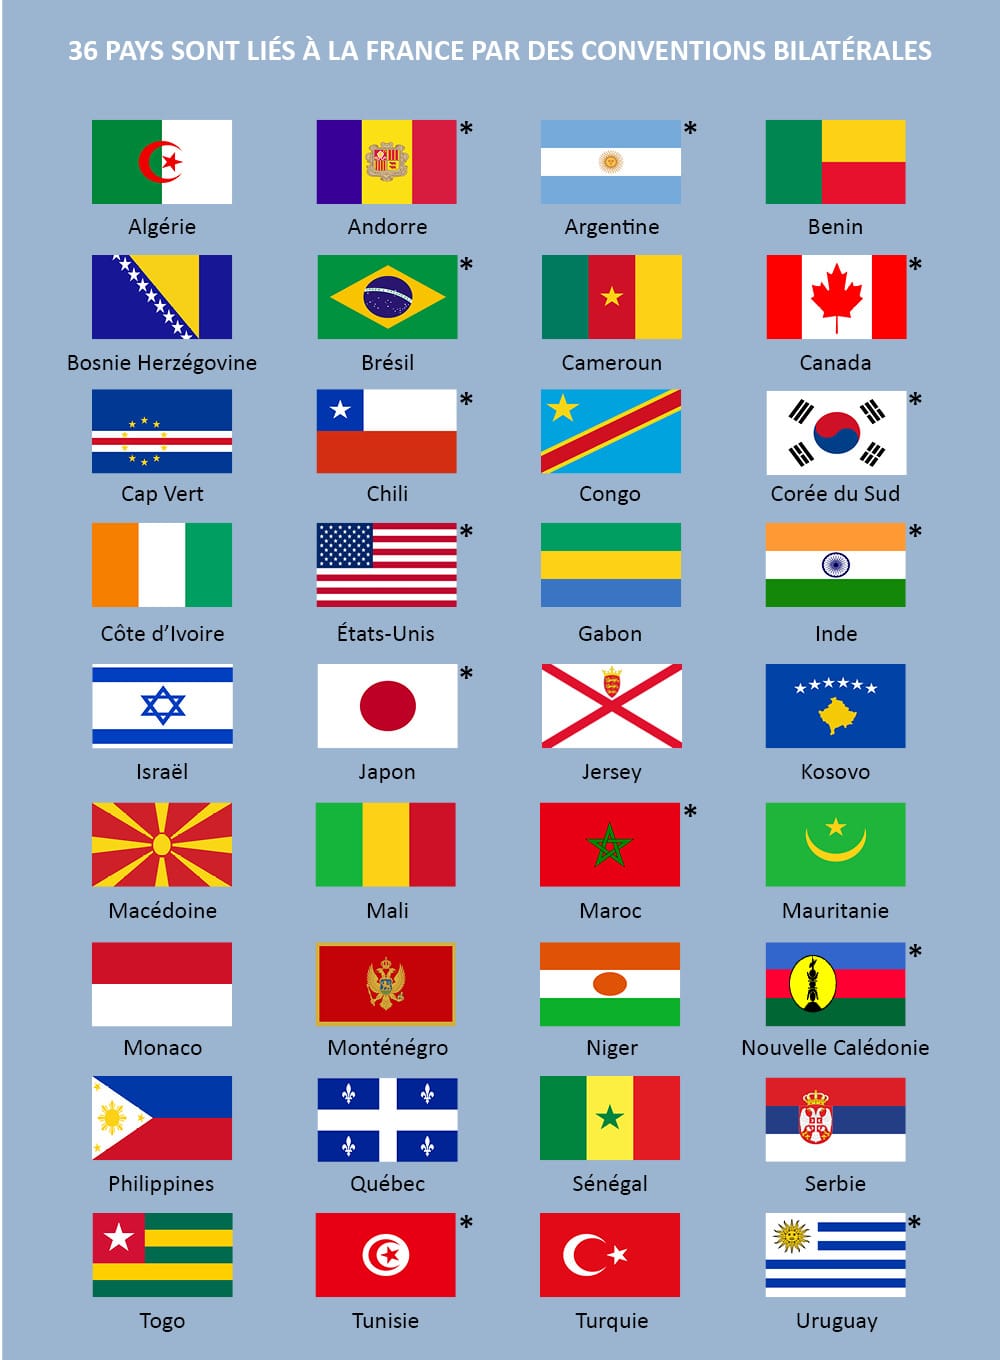 Les 36 pays liés à la France par des conventions bilatérales